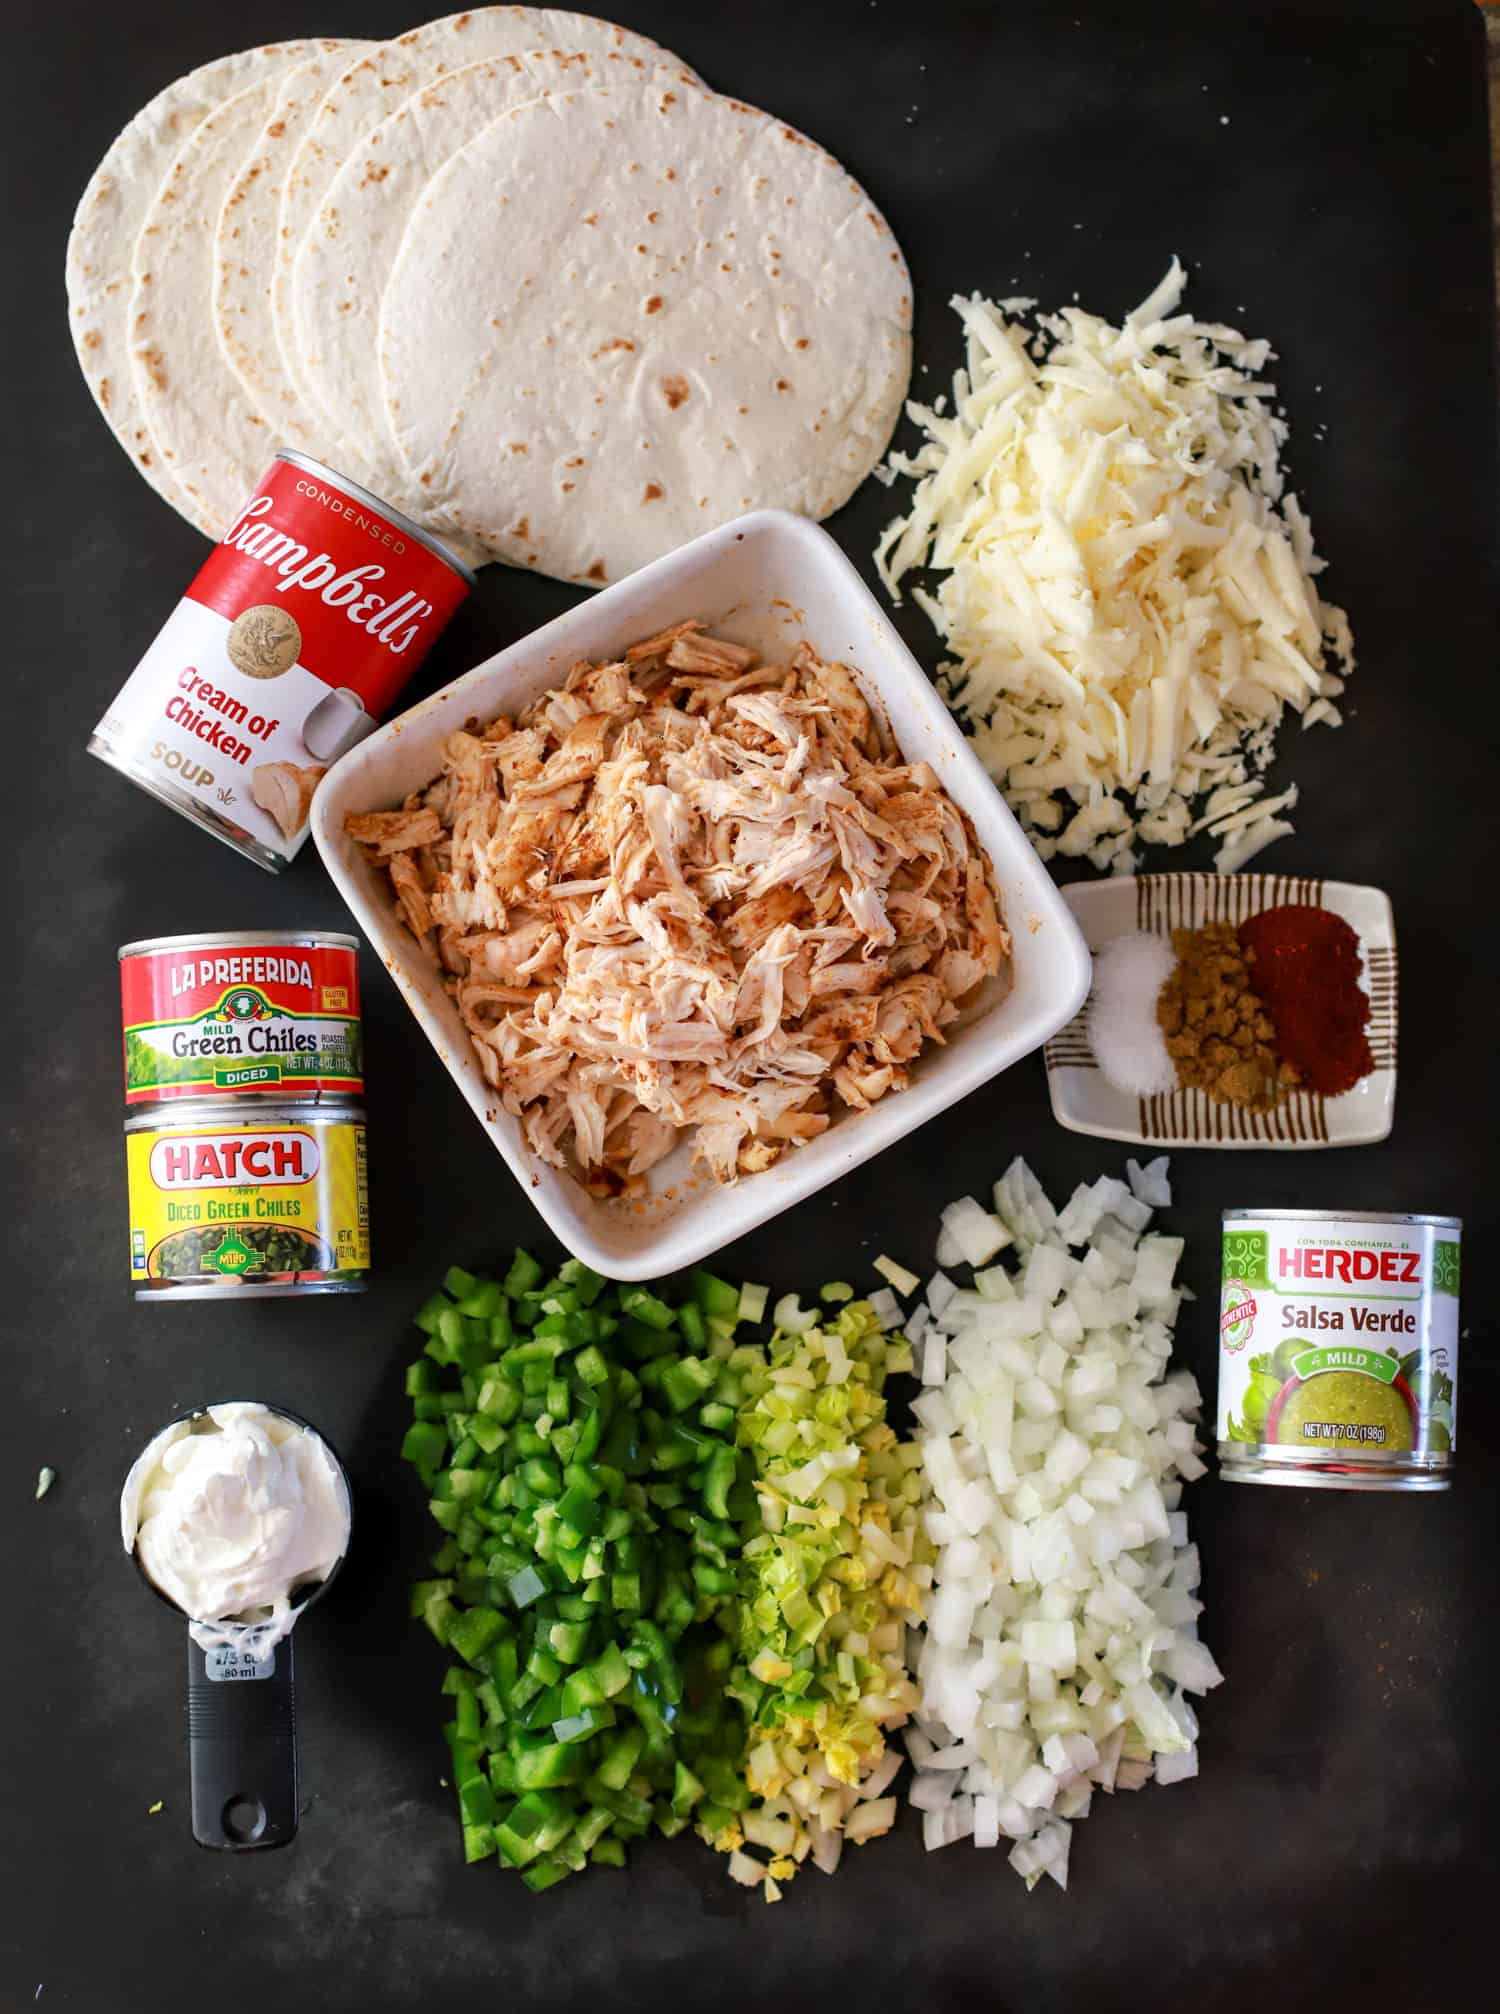 Ingredients for green chicken enchiladas on black board.